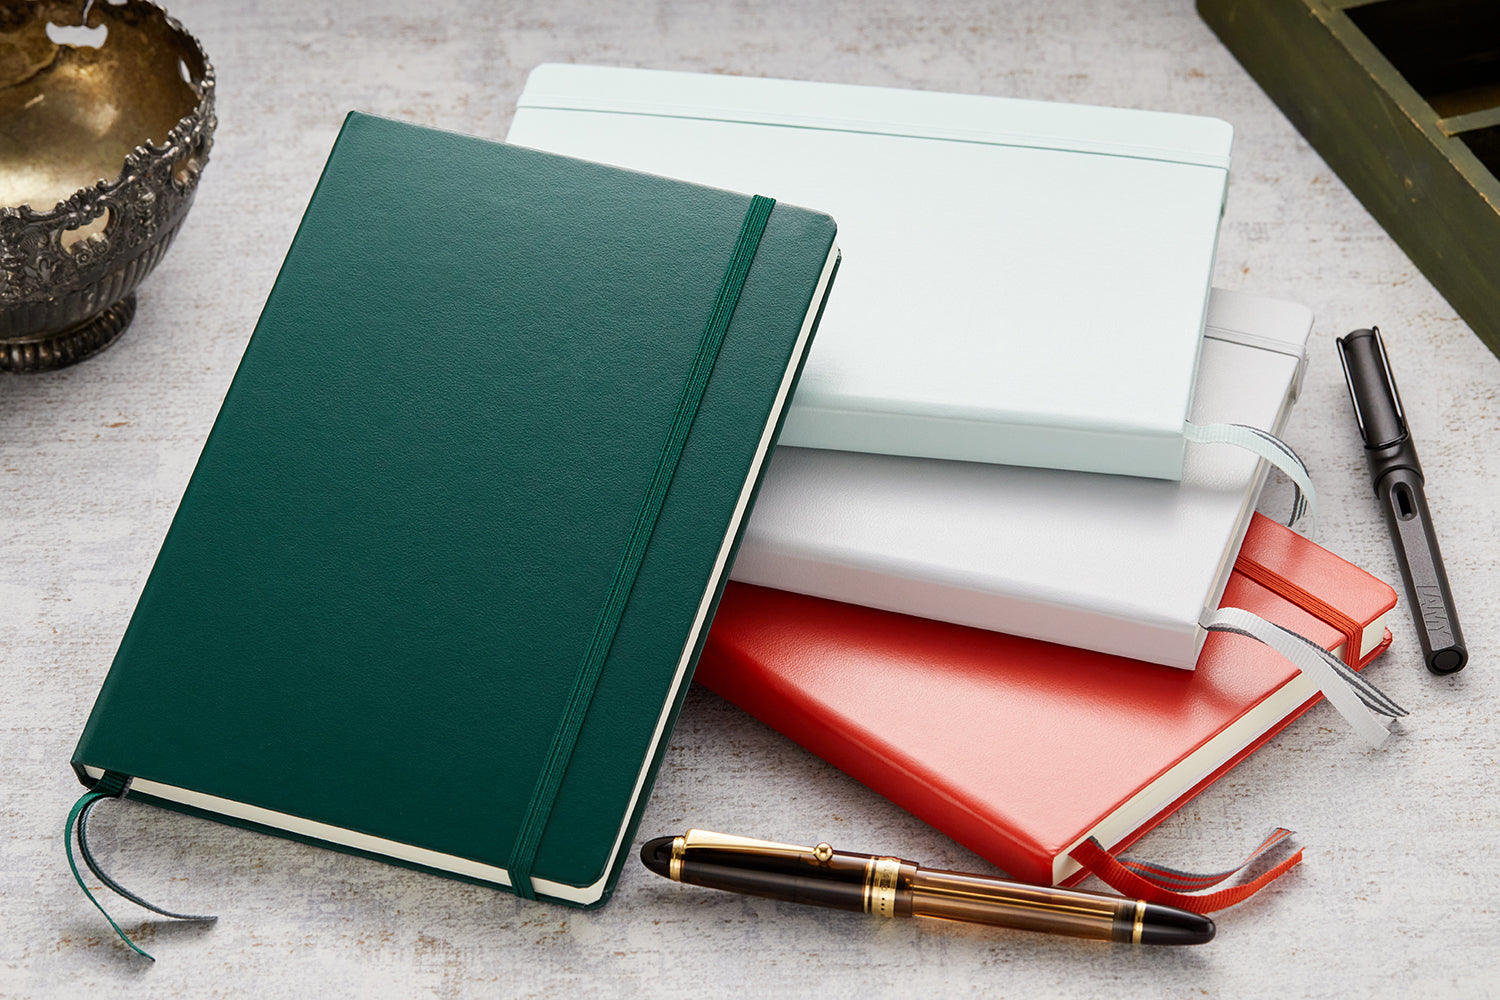 Leuchtturm1917 Notebook A5 Medium Mint Green